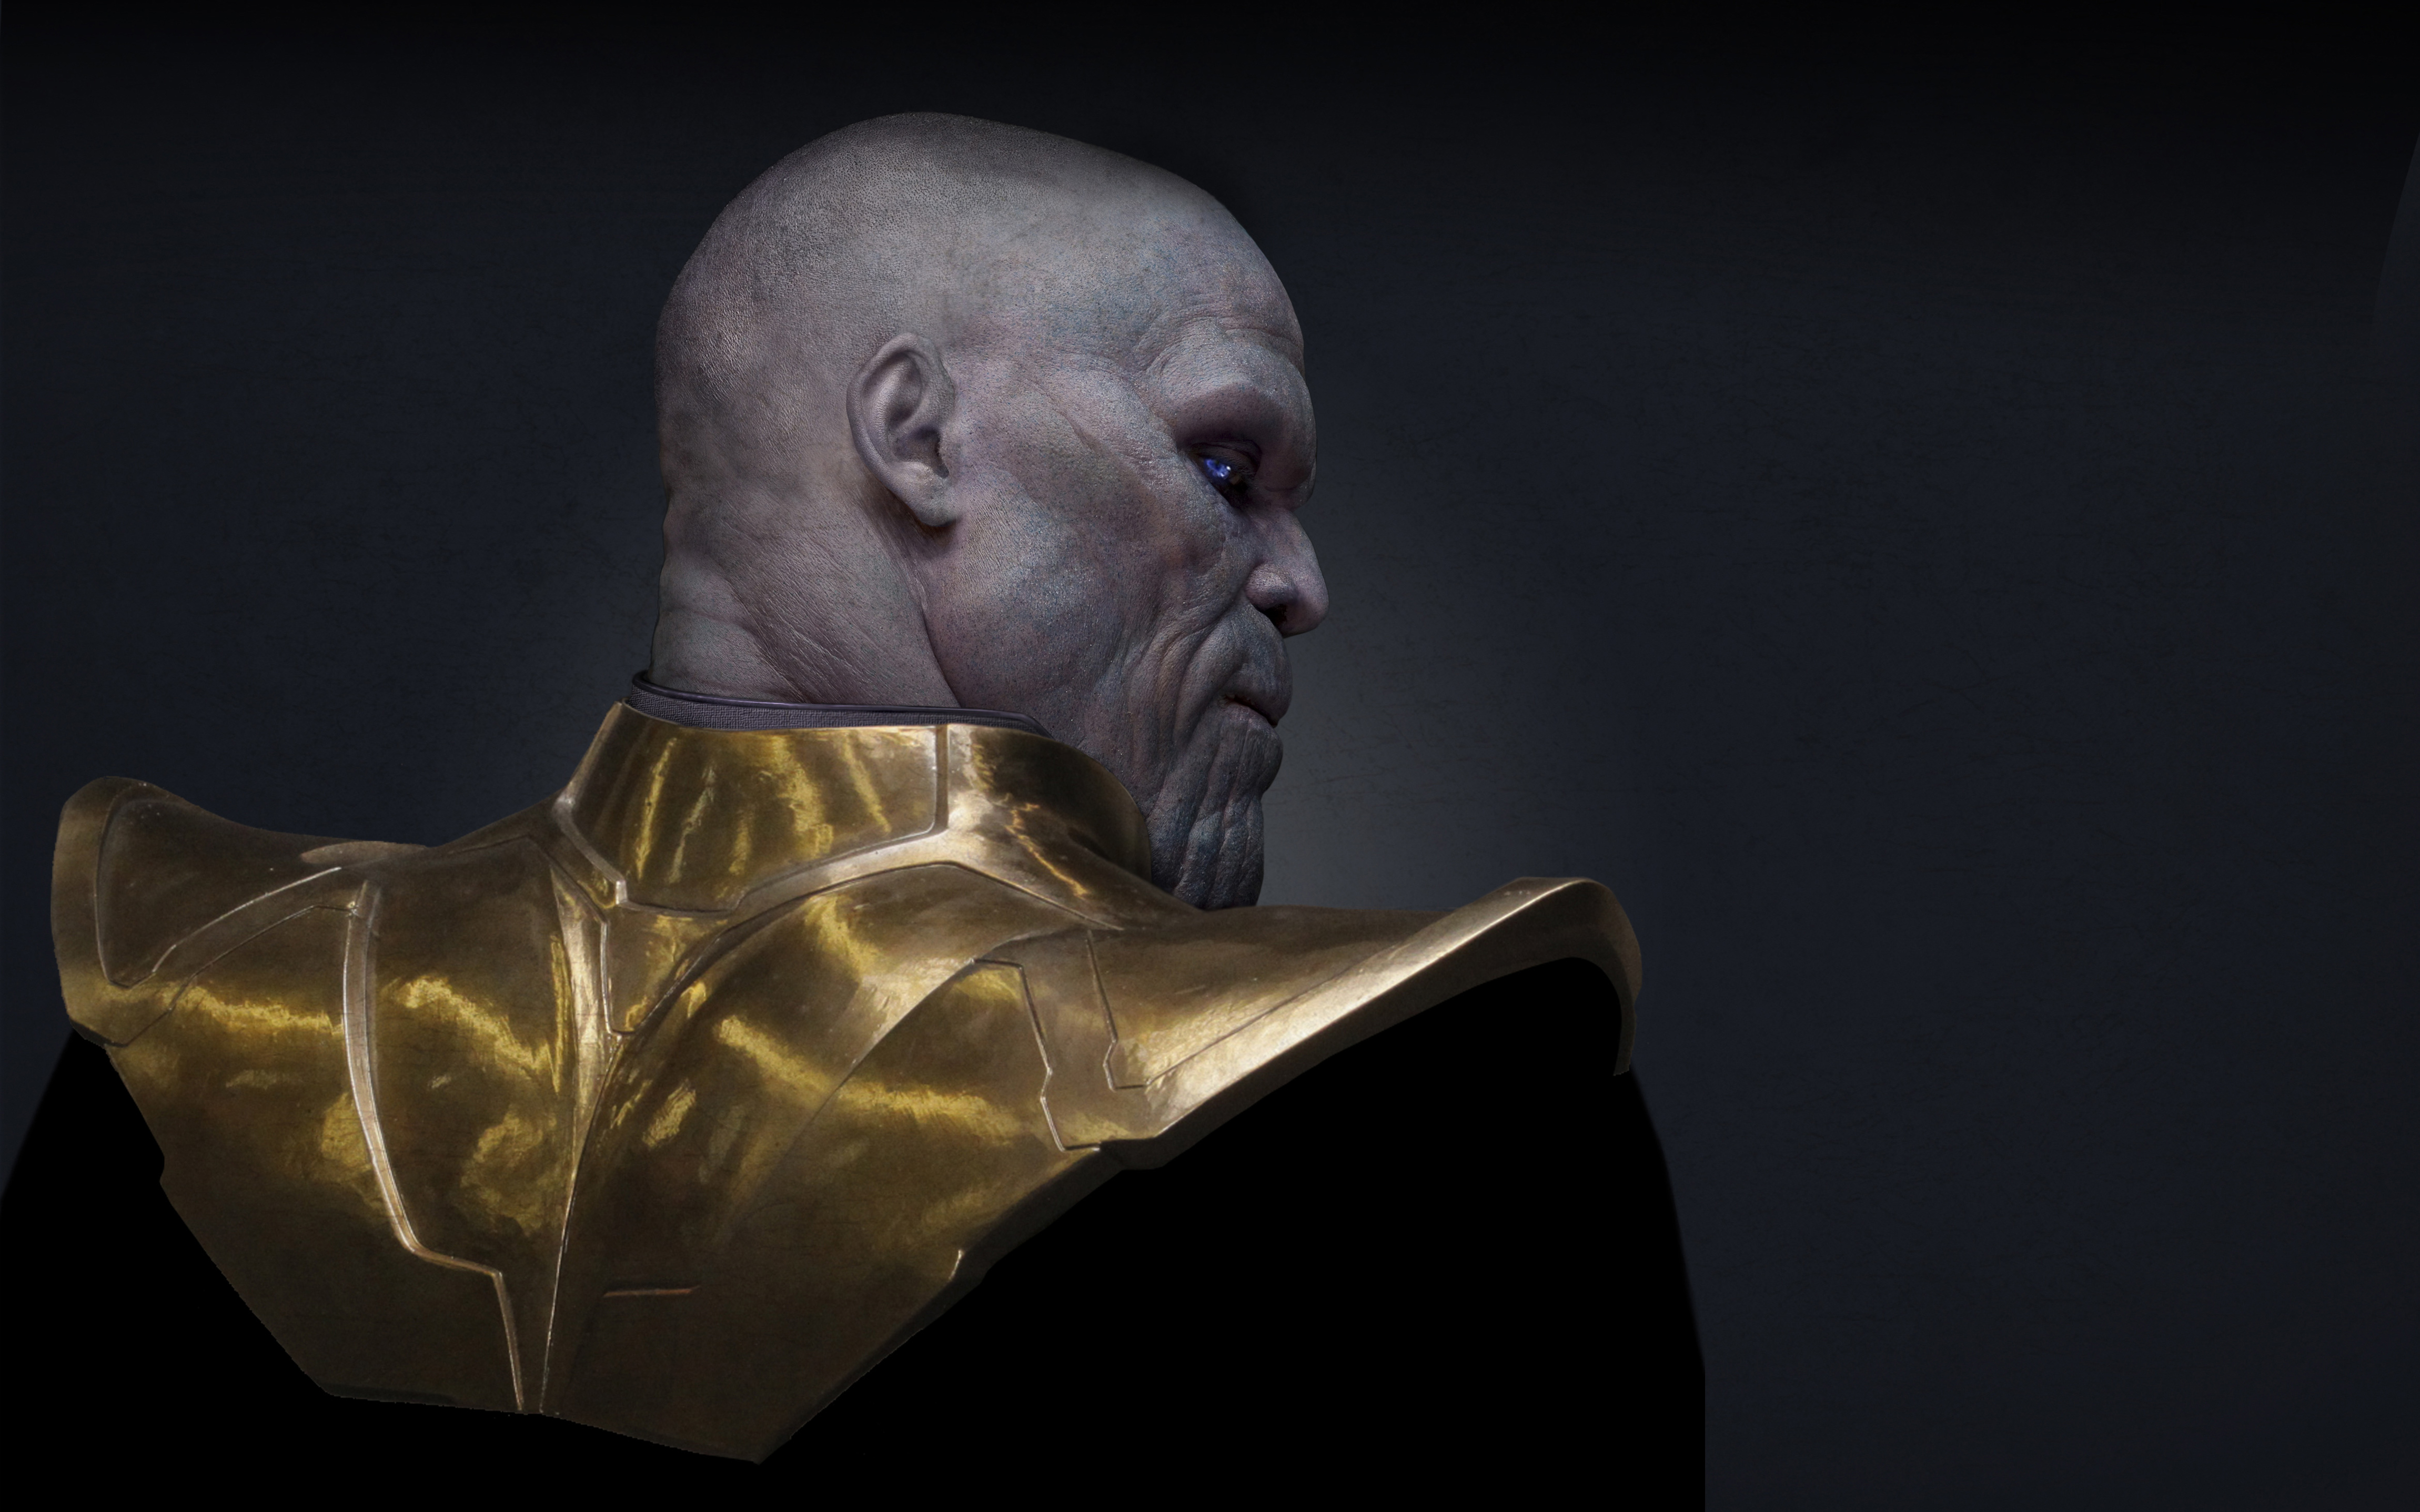 Jsh Brolin as Thanos in Avengers Infinity Woar 4K